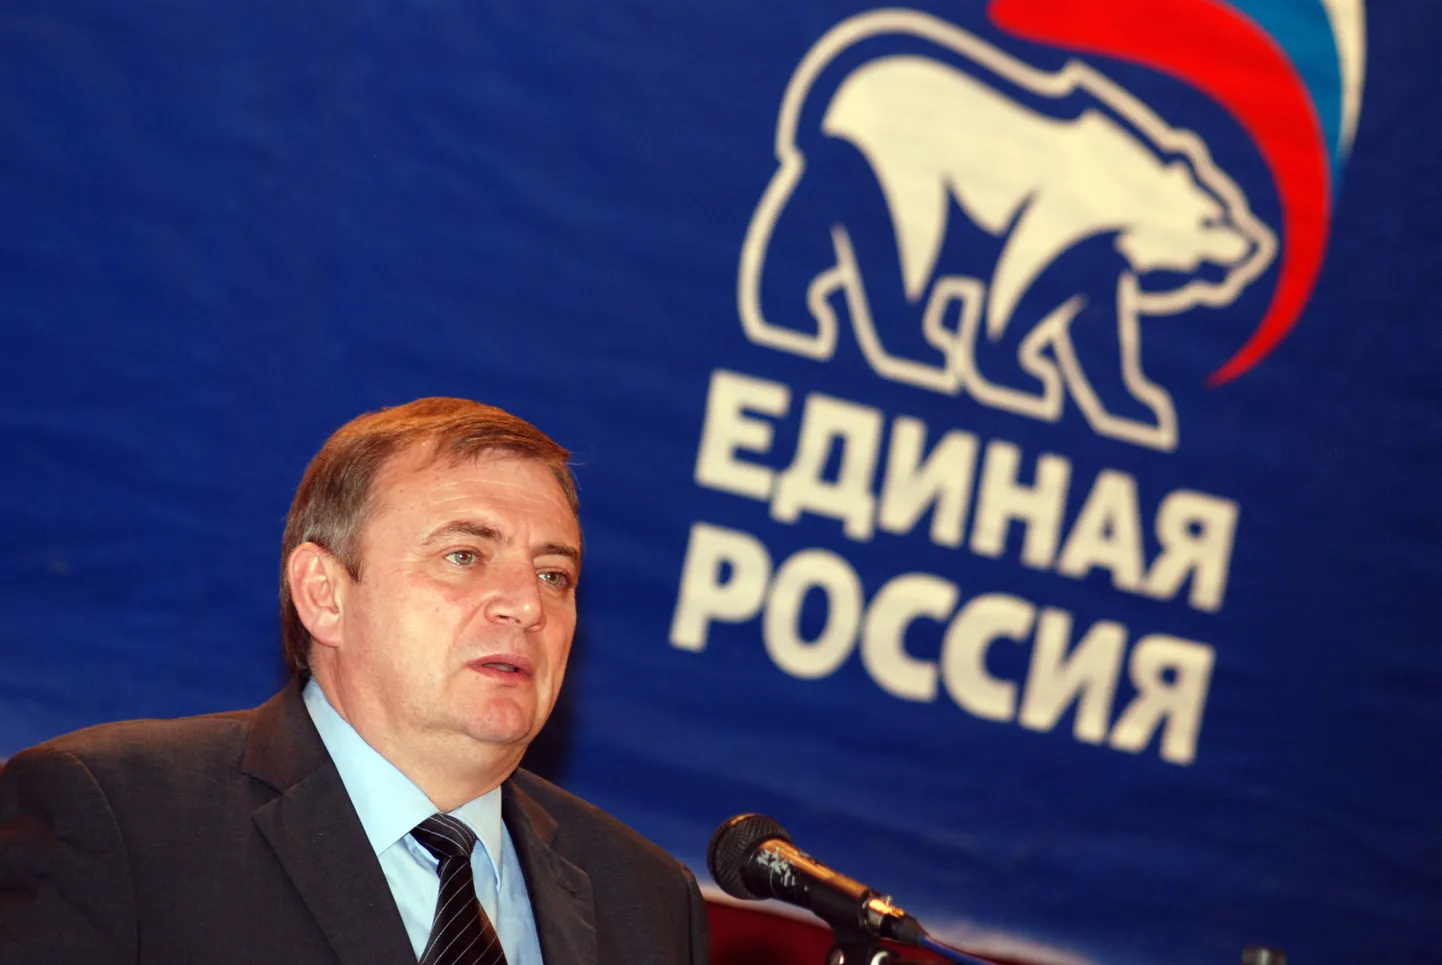 Sotši linnapea Anatoli Pahhomov võimupartei poliitnõukogu koosolekul.